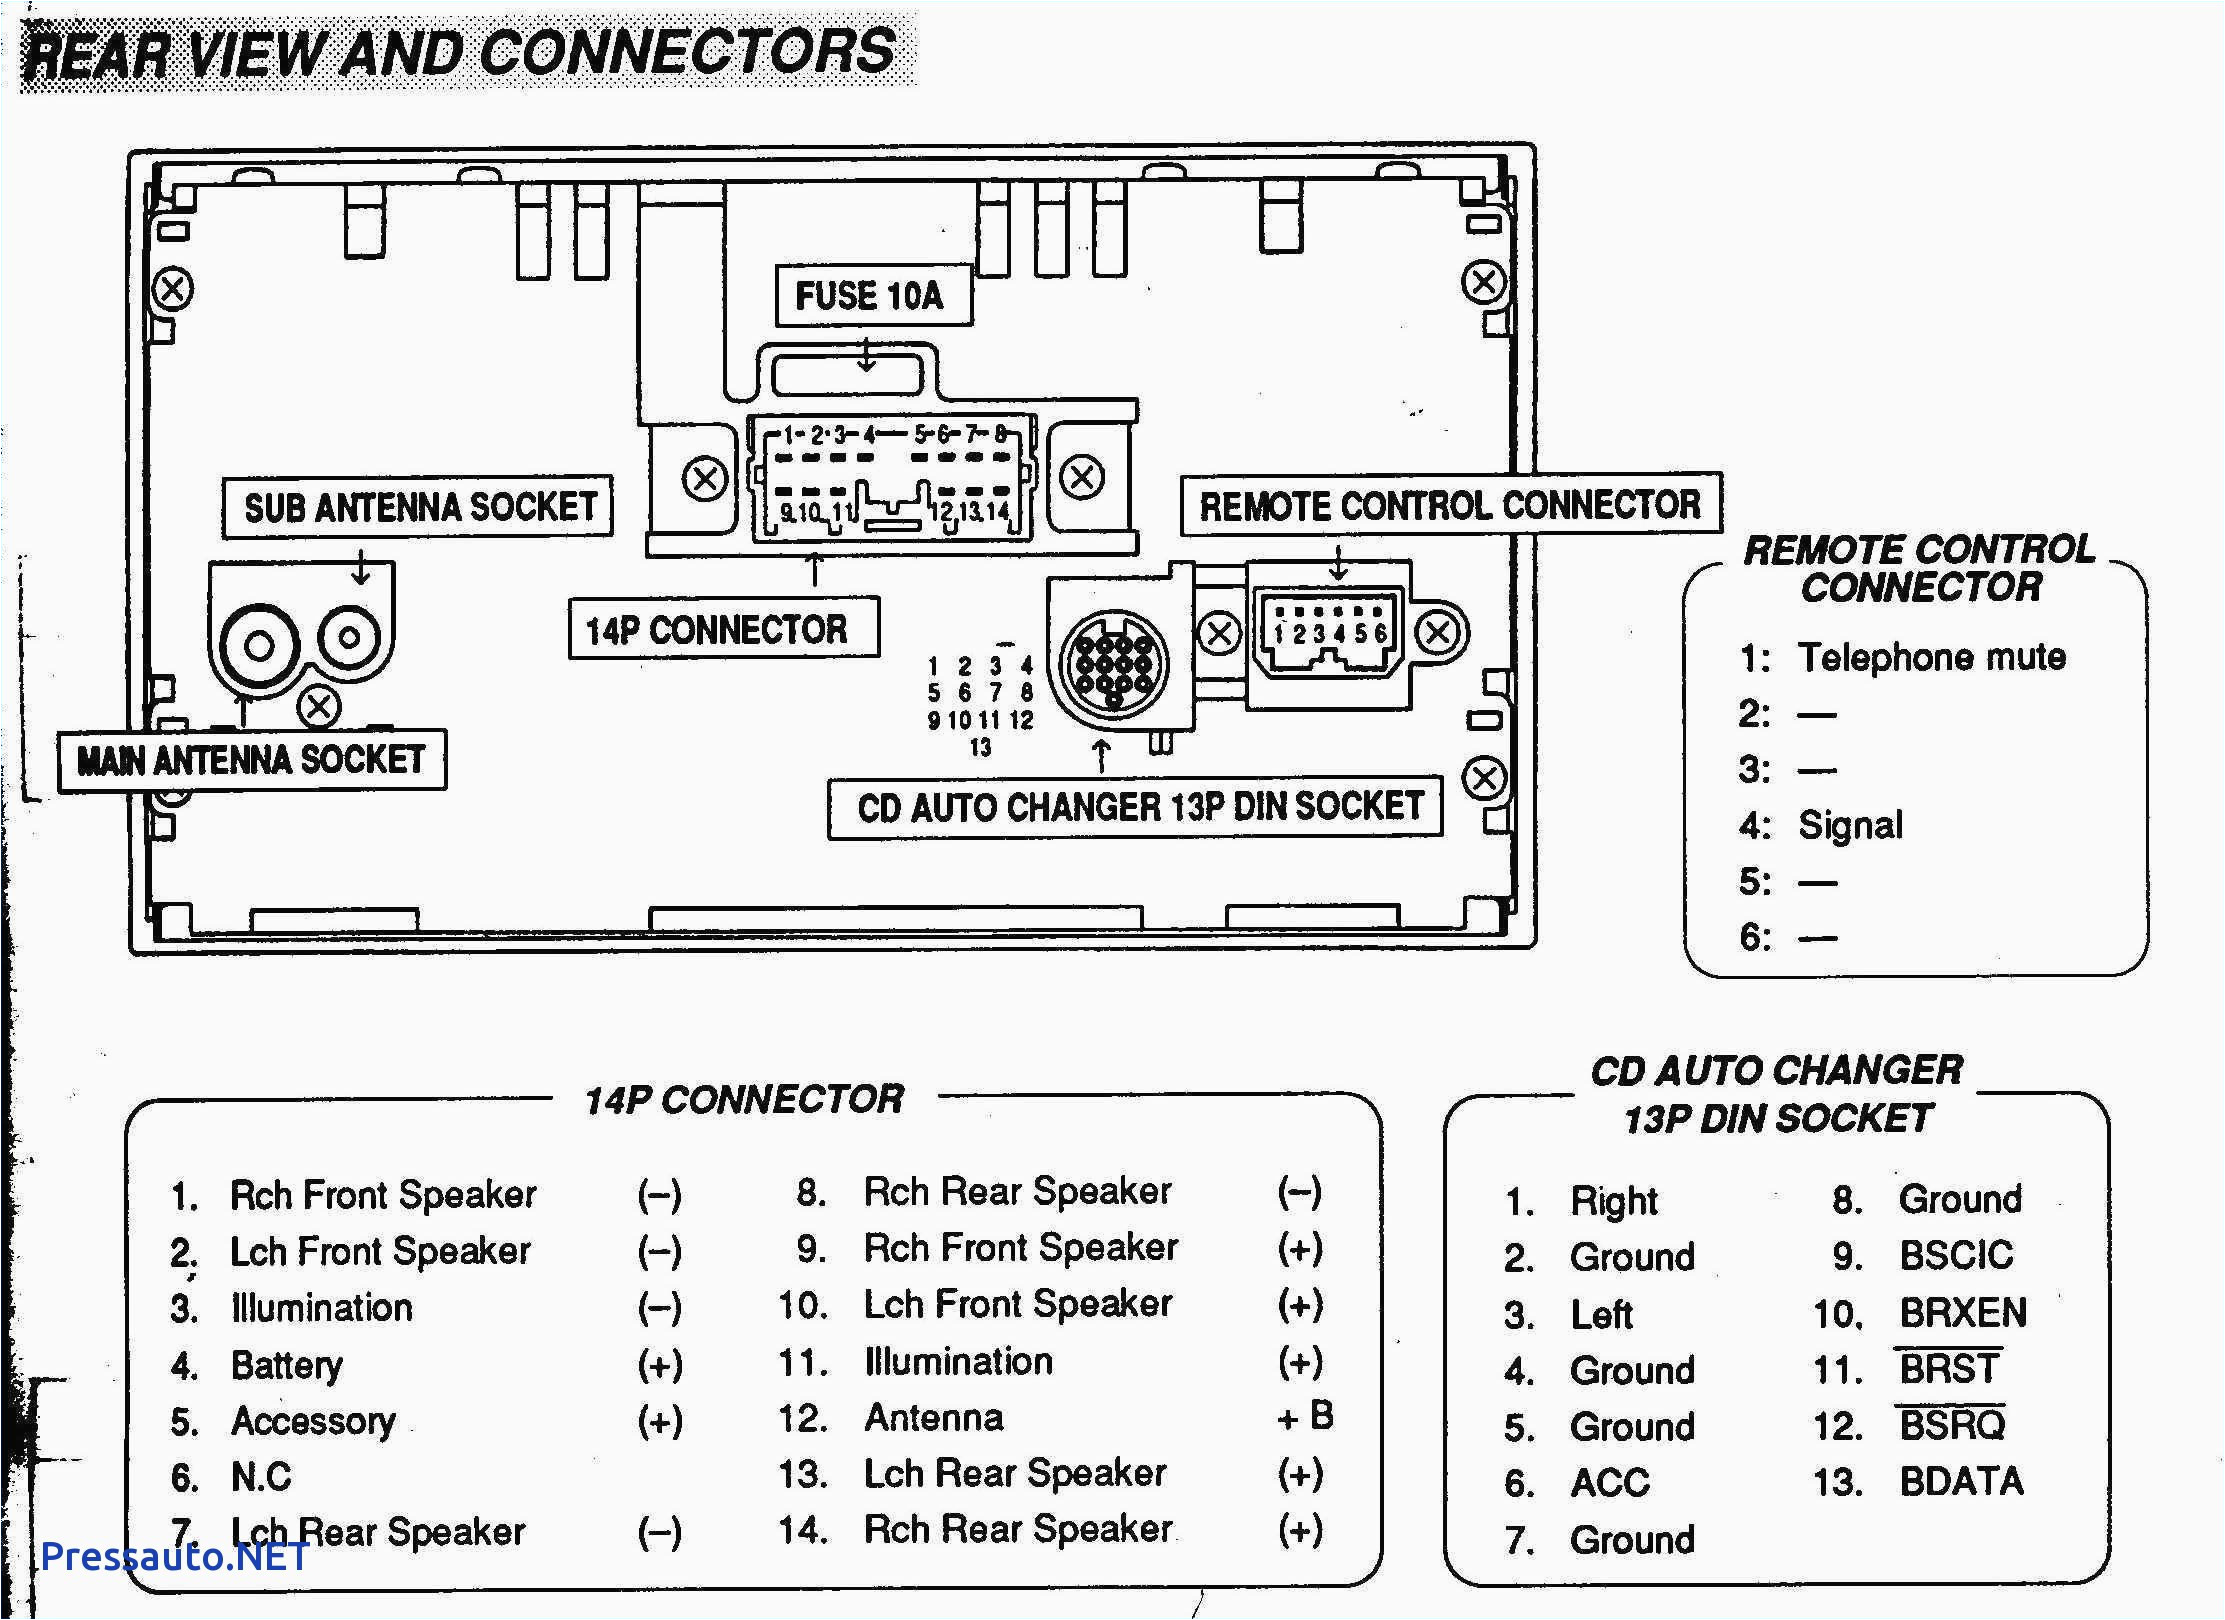 2016 vw jetta radio wiring diagram new 2002 volkswagen jetta car stereo wiring diagram explore schematic of 2016 vw jetta radio wiring diagram jpg